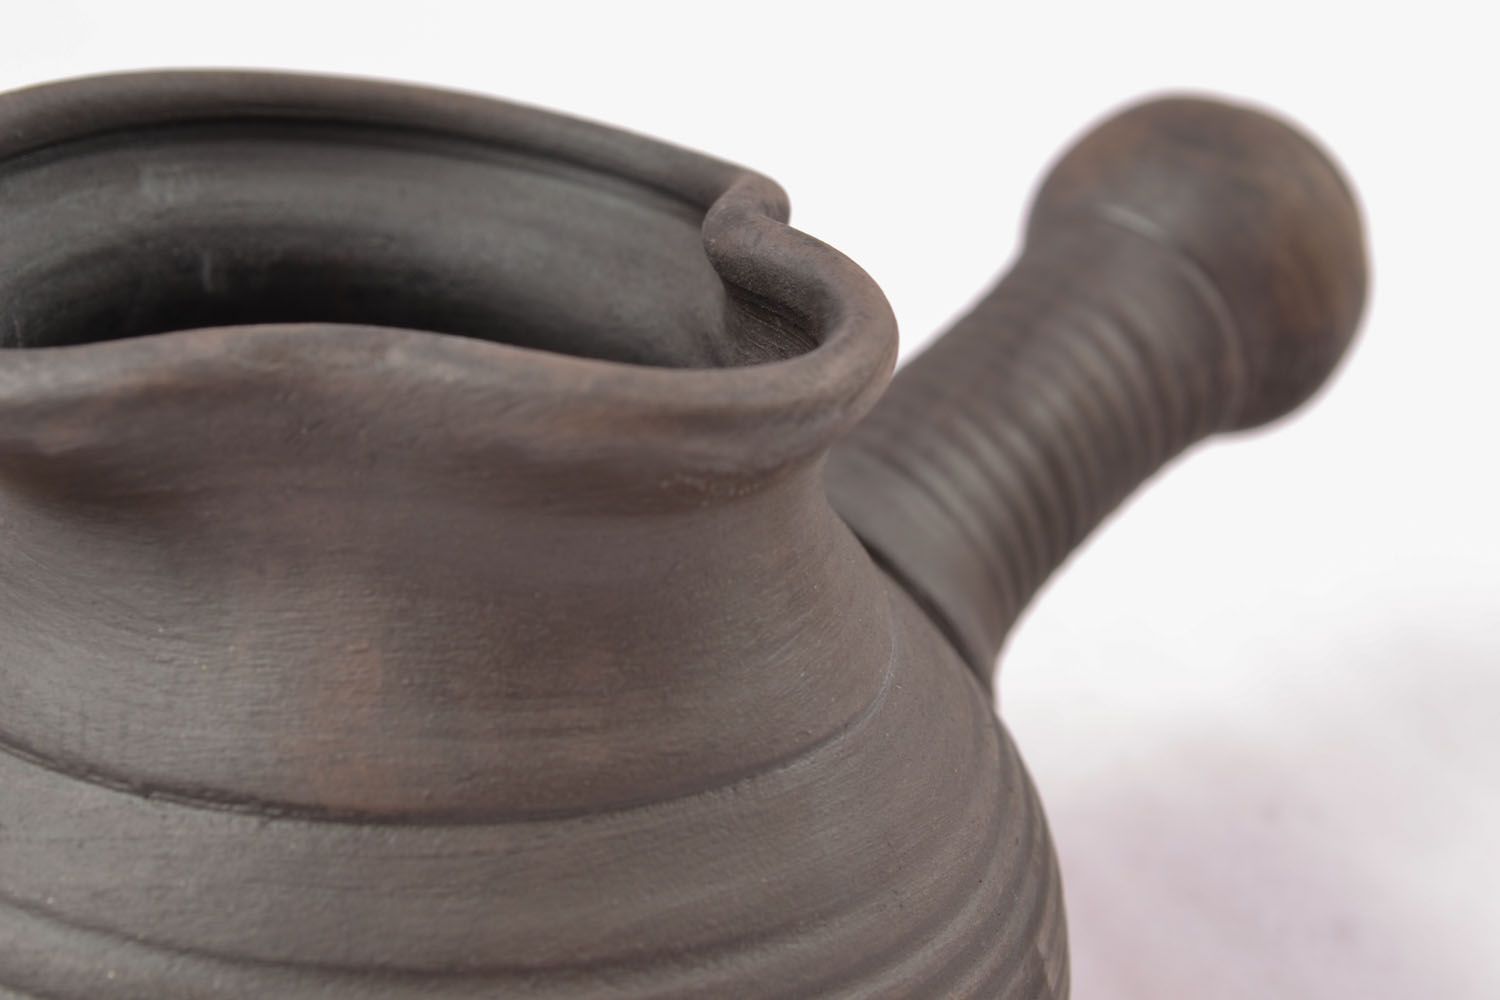 Türkischer Kaffeekocher aus Keramik foto 3